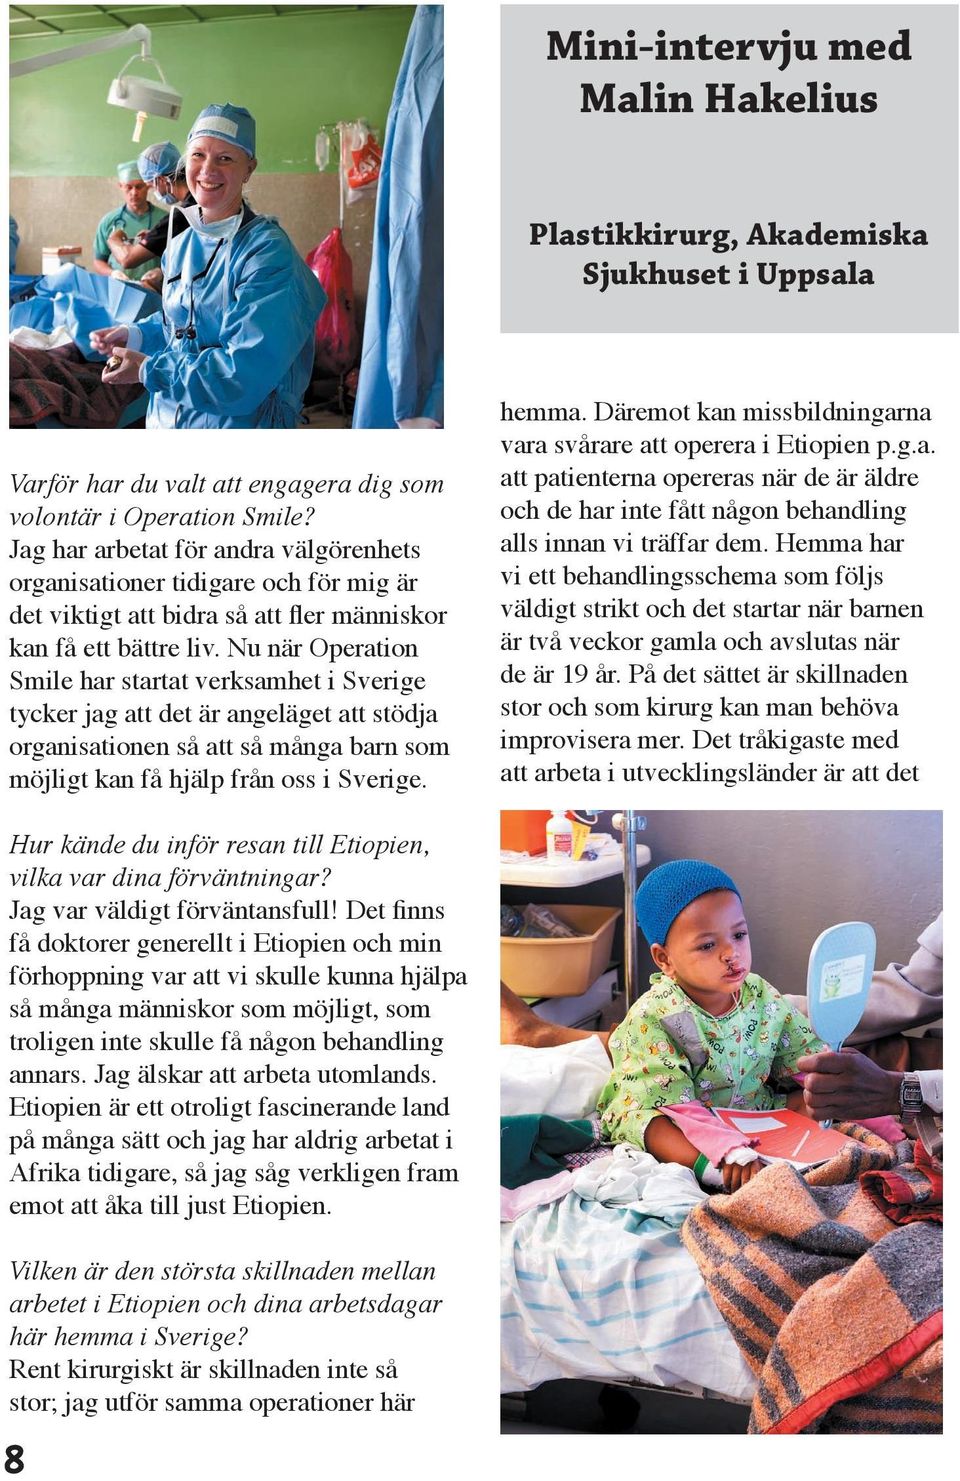 Nu när Operation Smile har startat verksamhet i Sverige tycker jag att det är angeläget att stödja organisationen så att så många barn som möjligt kan få hjälp från oss i Sverige. hemma.